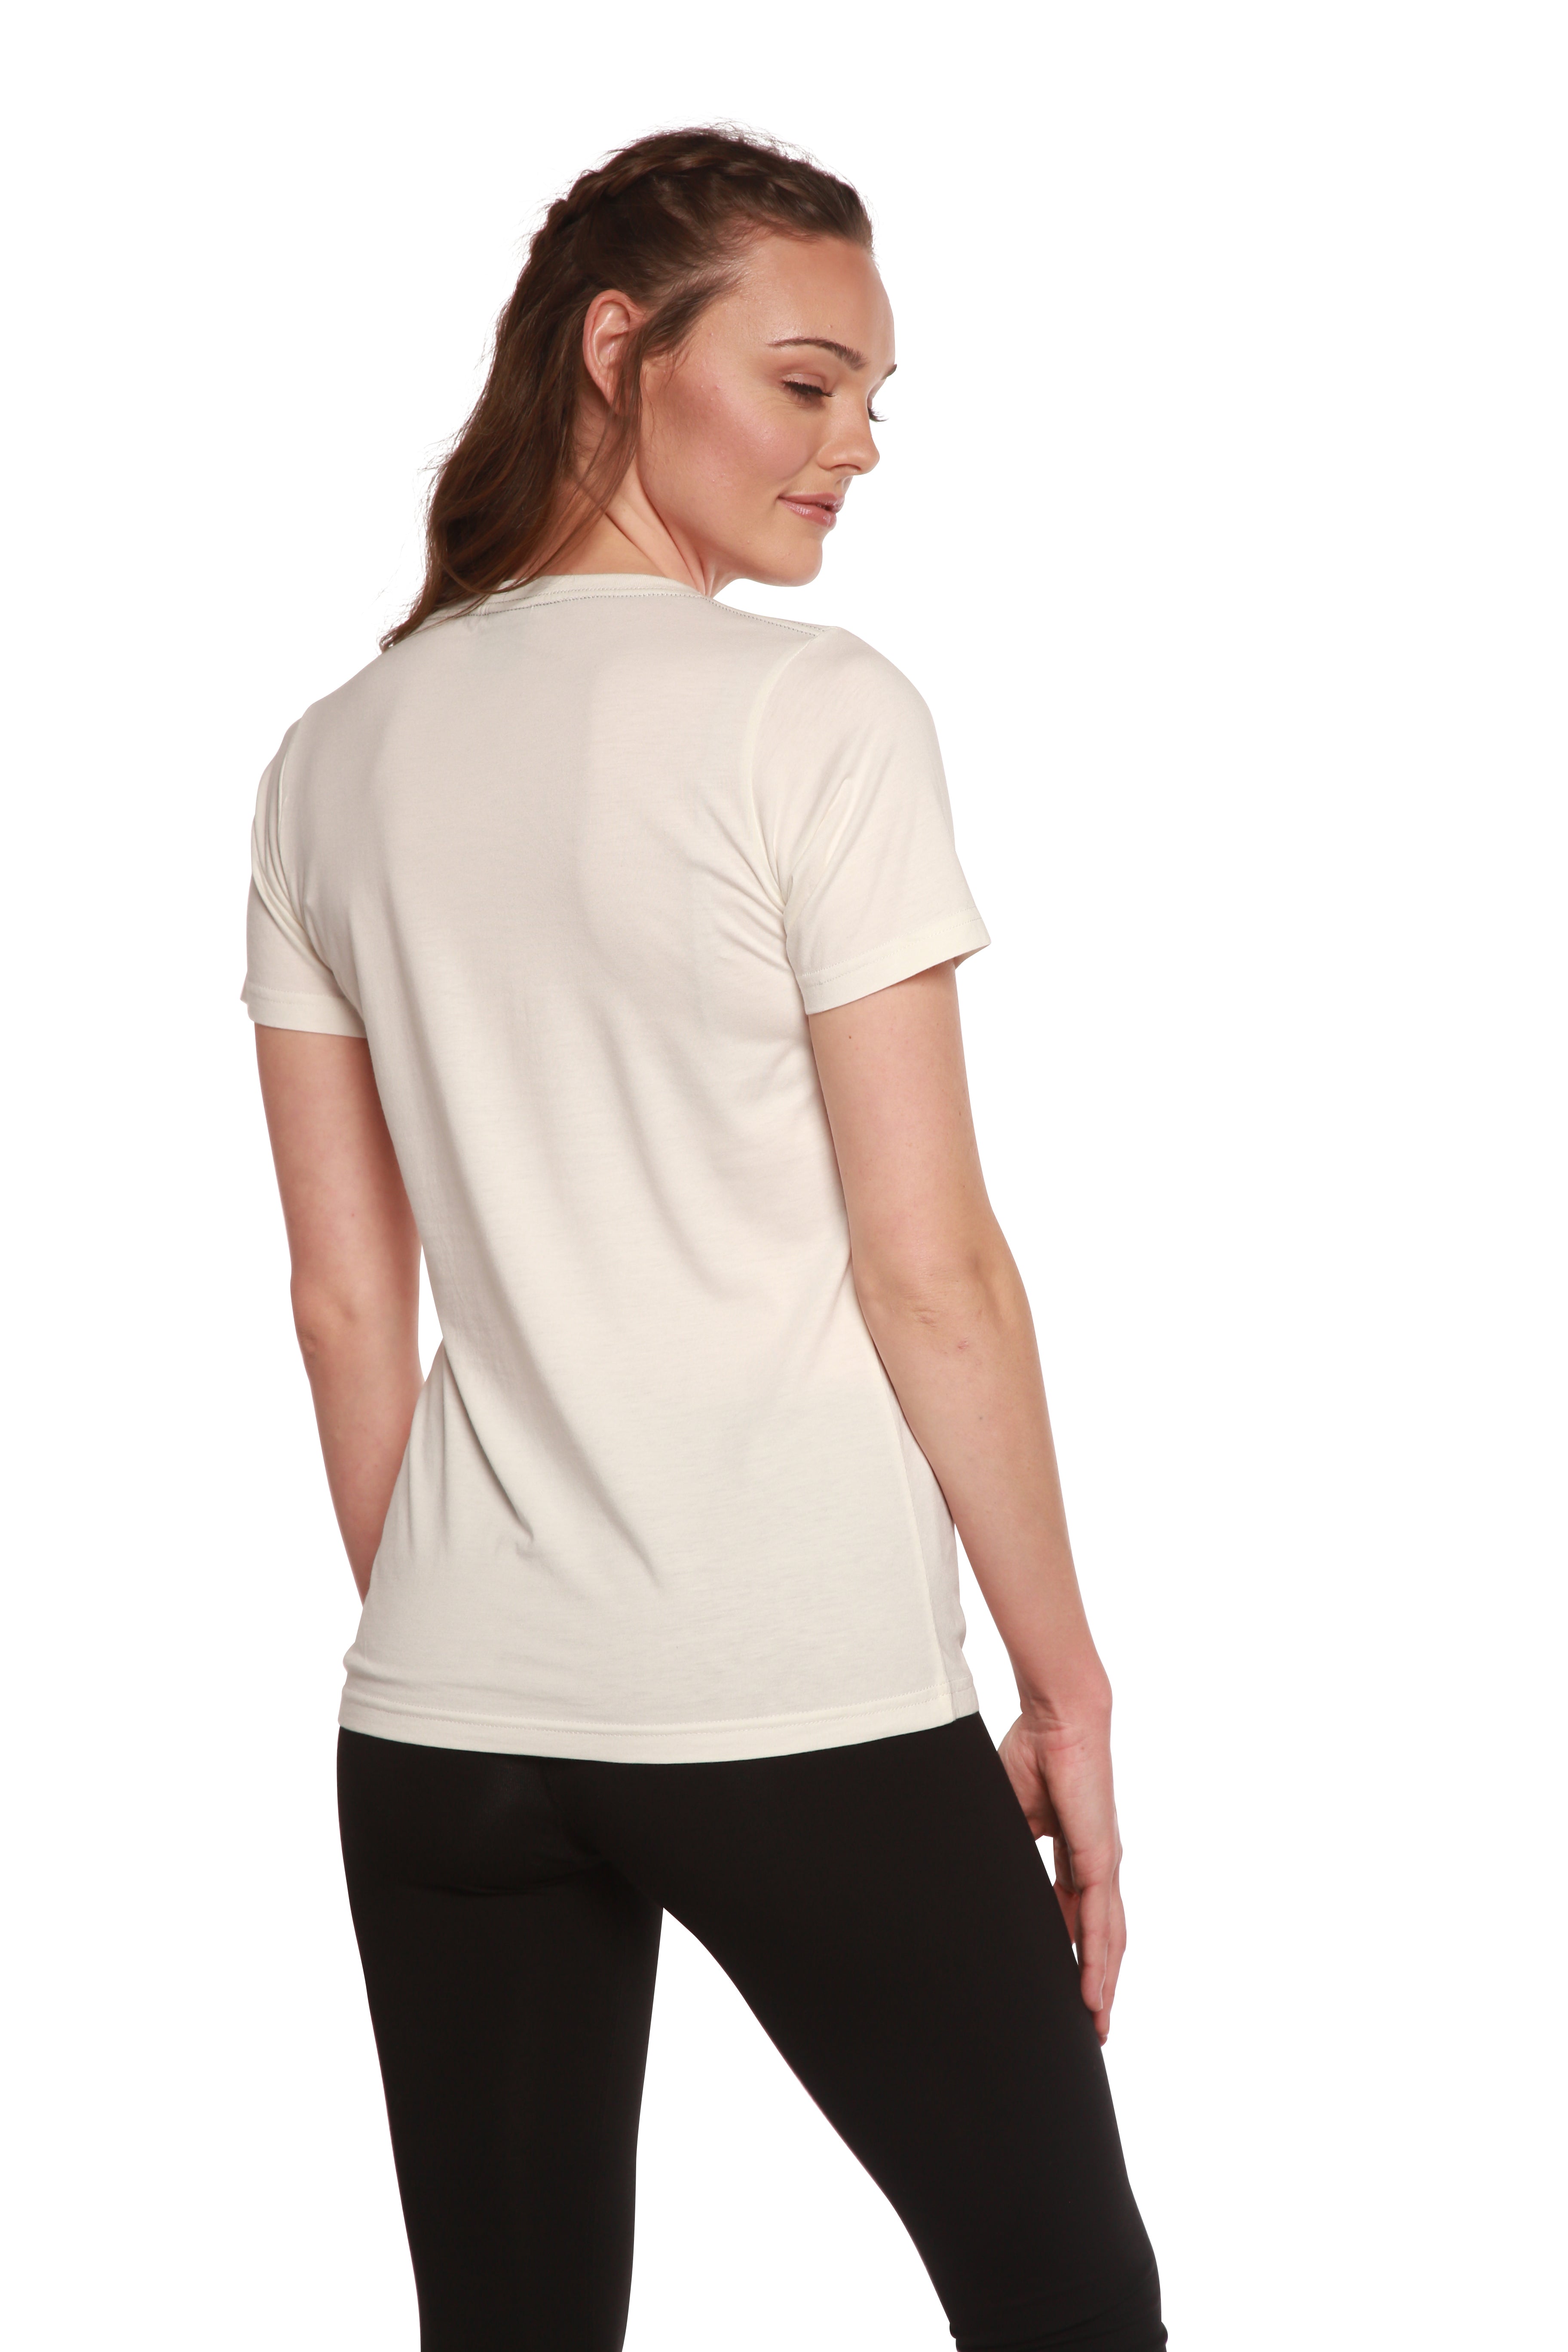 Women's Bamboo/Cotton Short Sleeve Scoop Neck T-Shirt